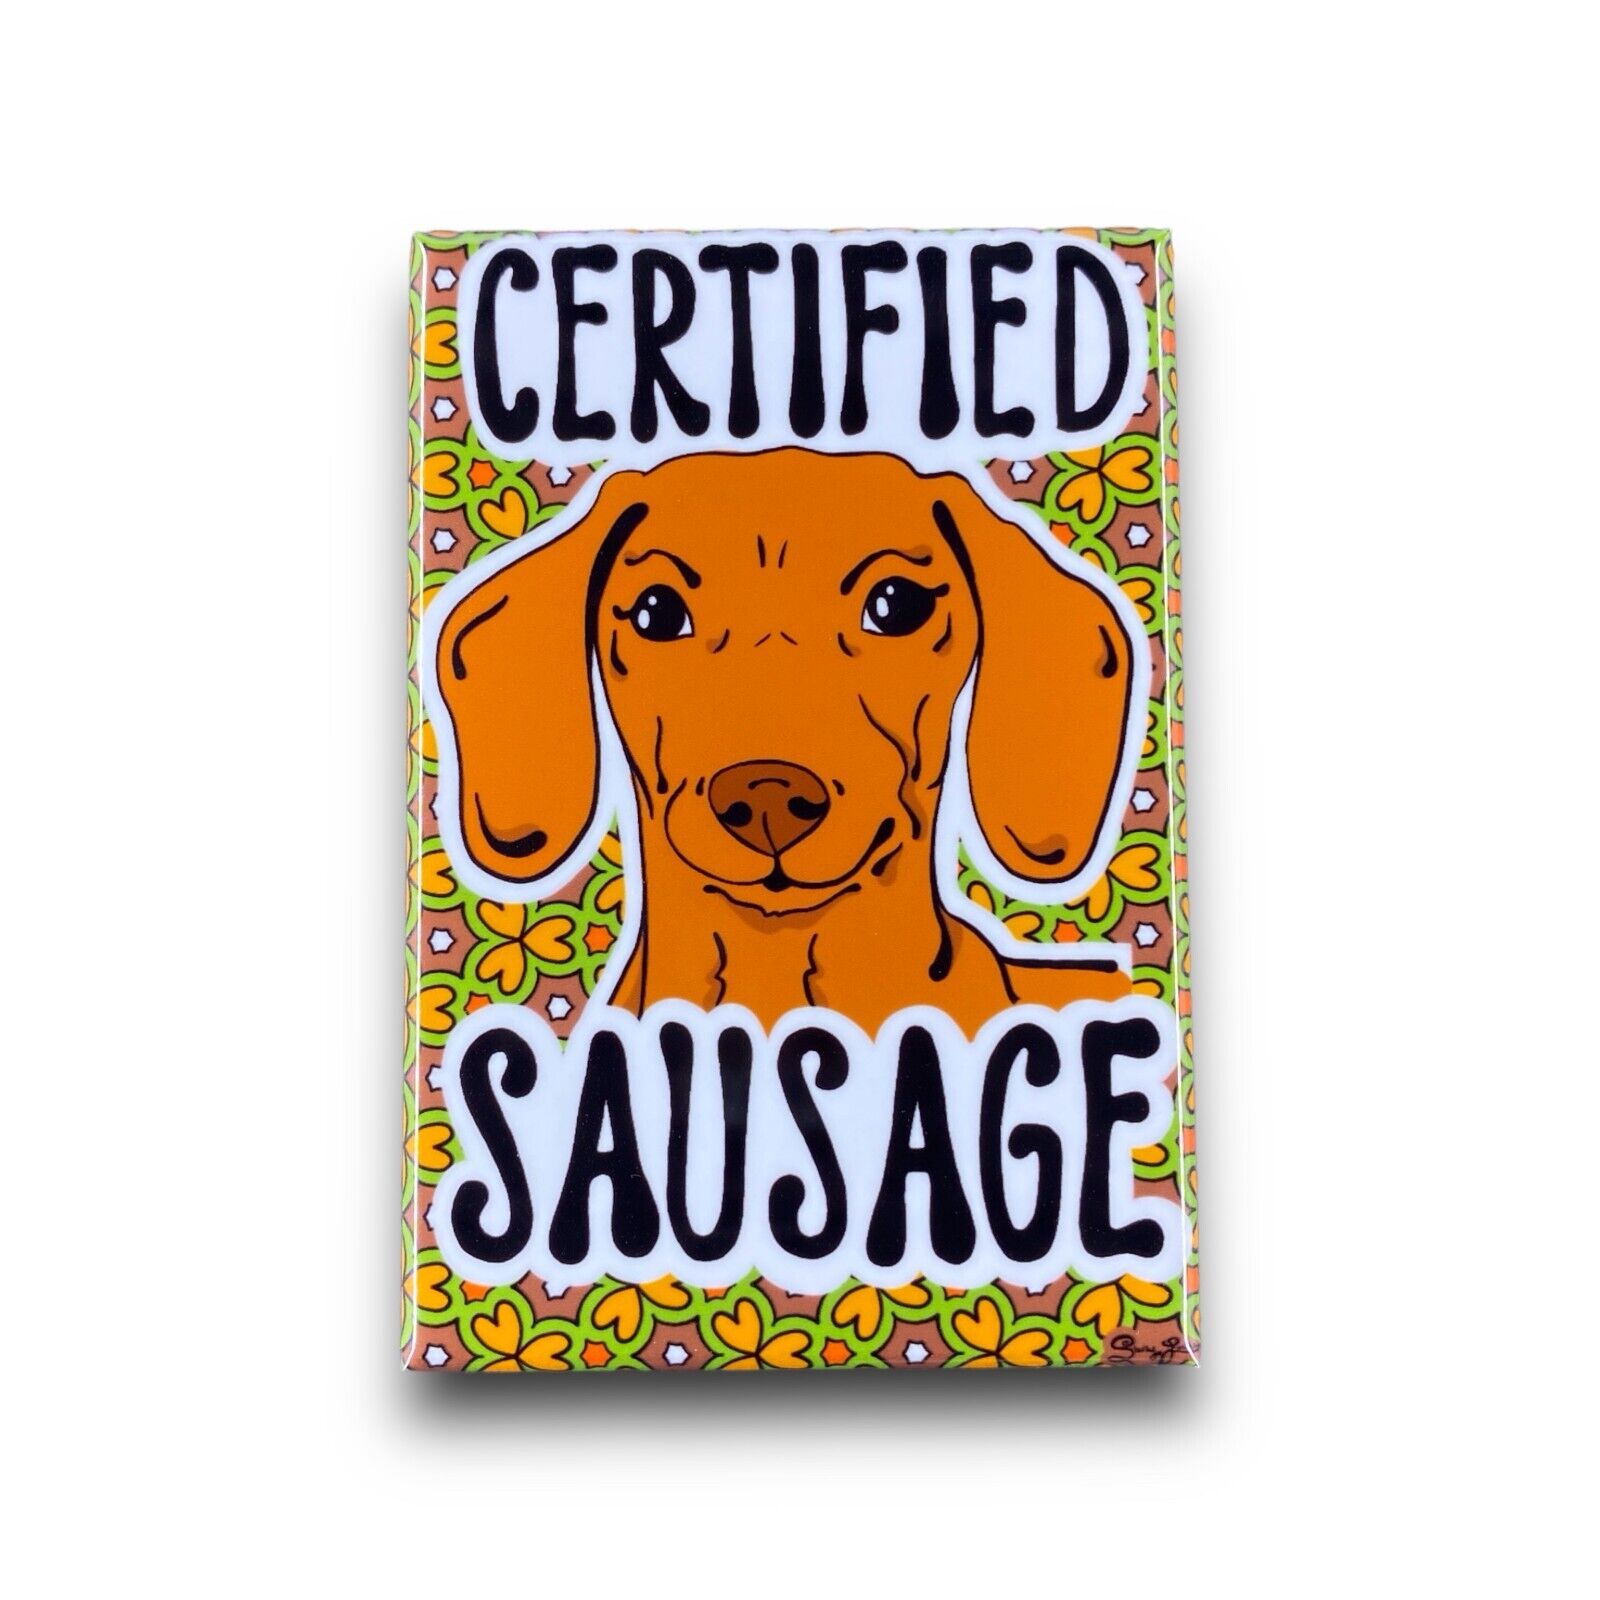 Red Dachshund Wiener Dog Certified Sausage Magnet 2x3 Handmade Decor Gift